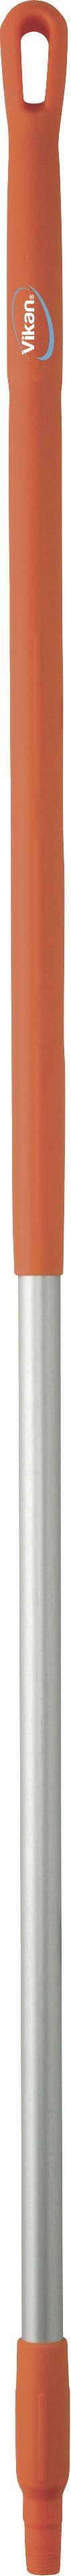 Vikan Hygiene 2937 oranje aluminium steel 150 cm